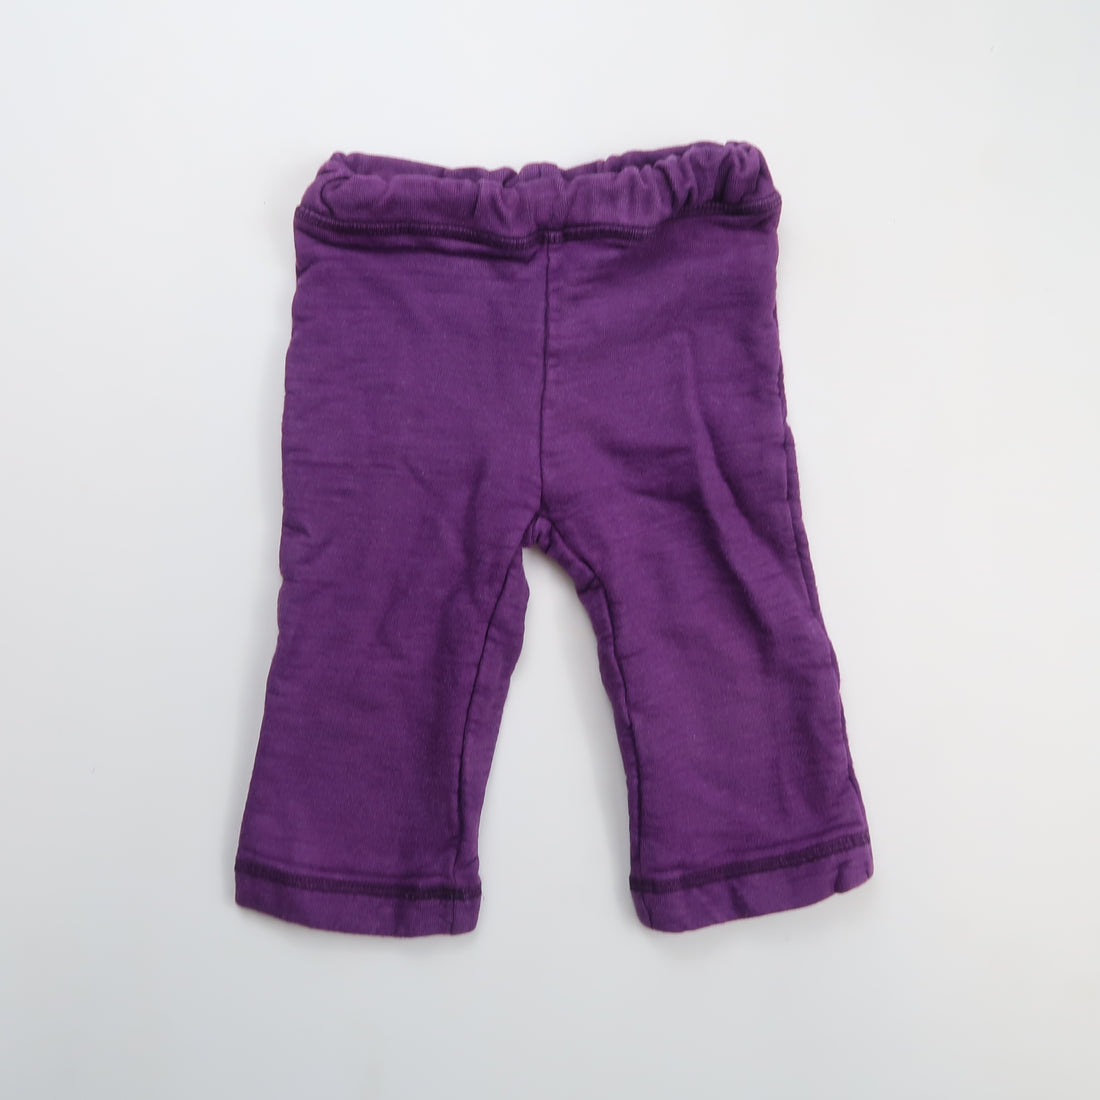 Little Bambino - Pants (6M)